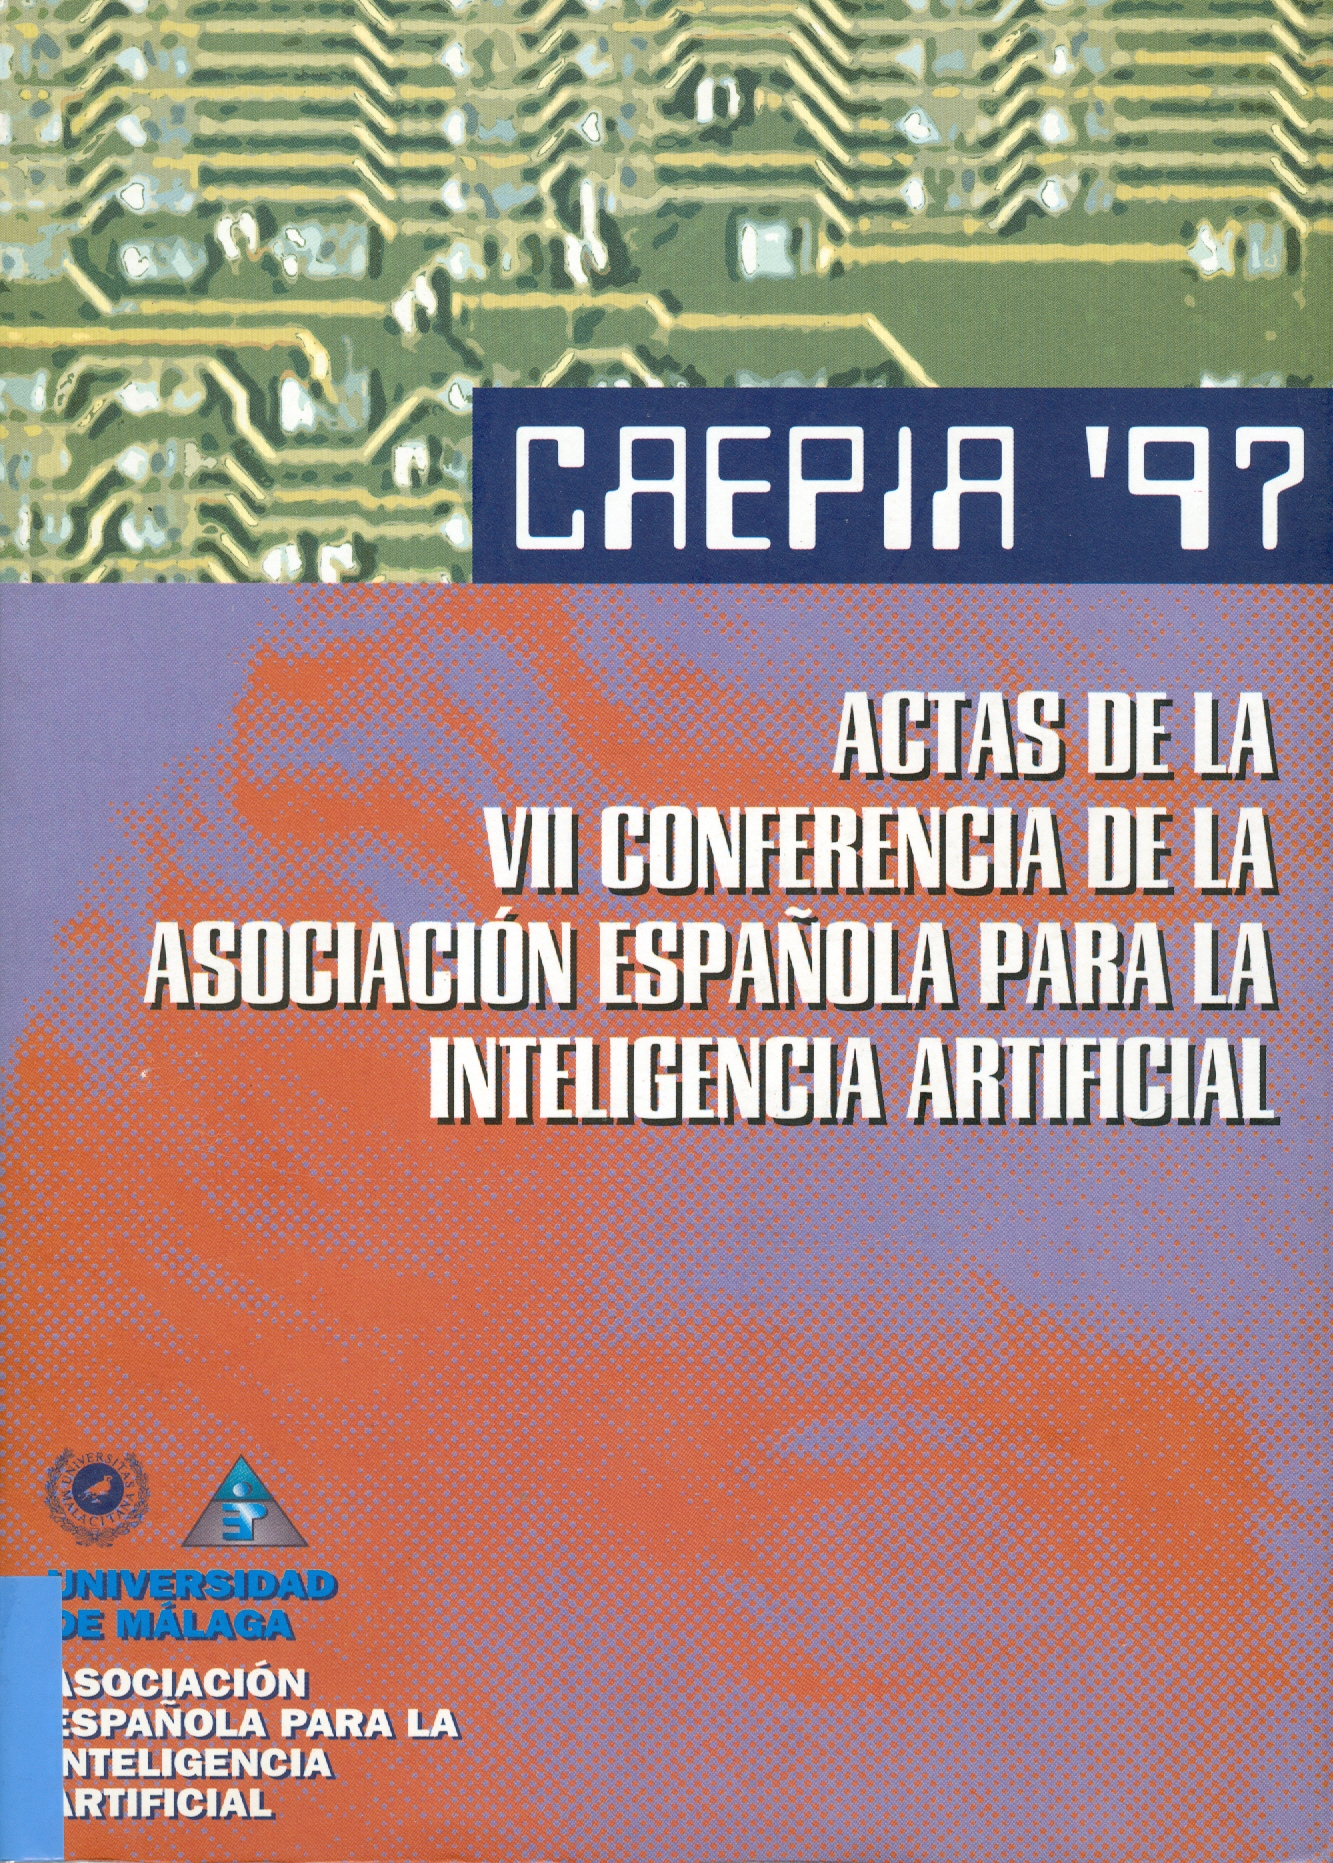 Imagen de portada del libro CAEPIA'97